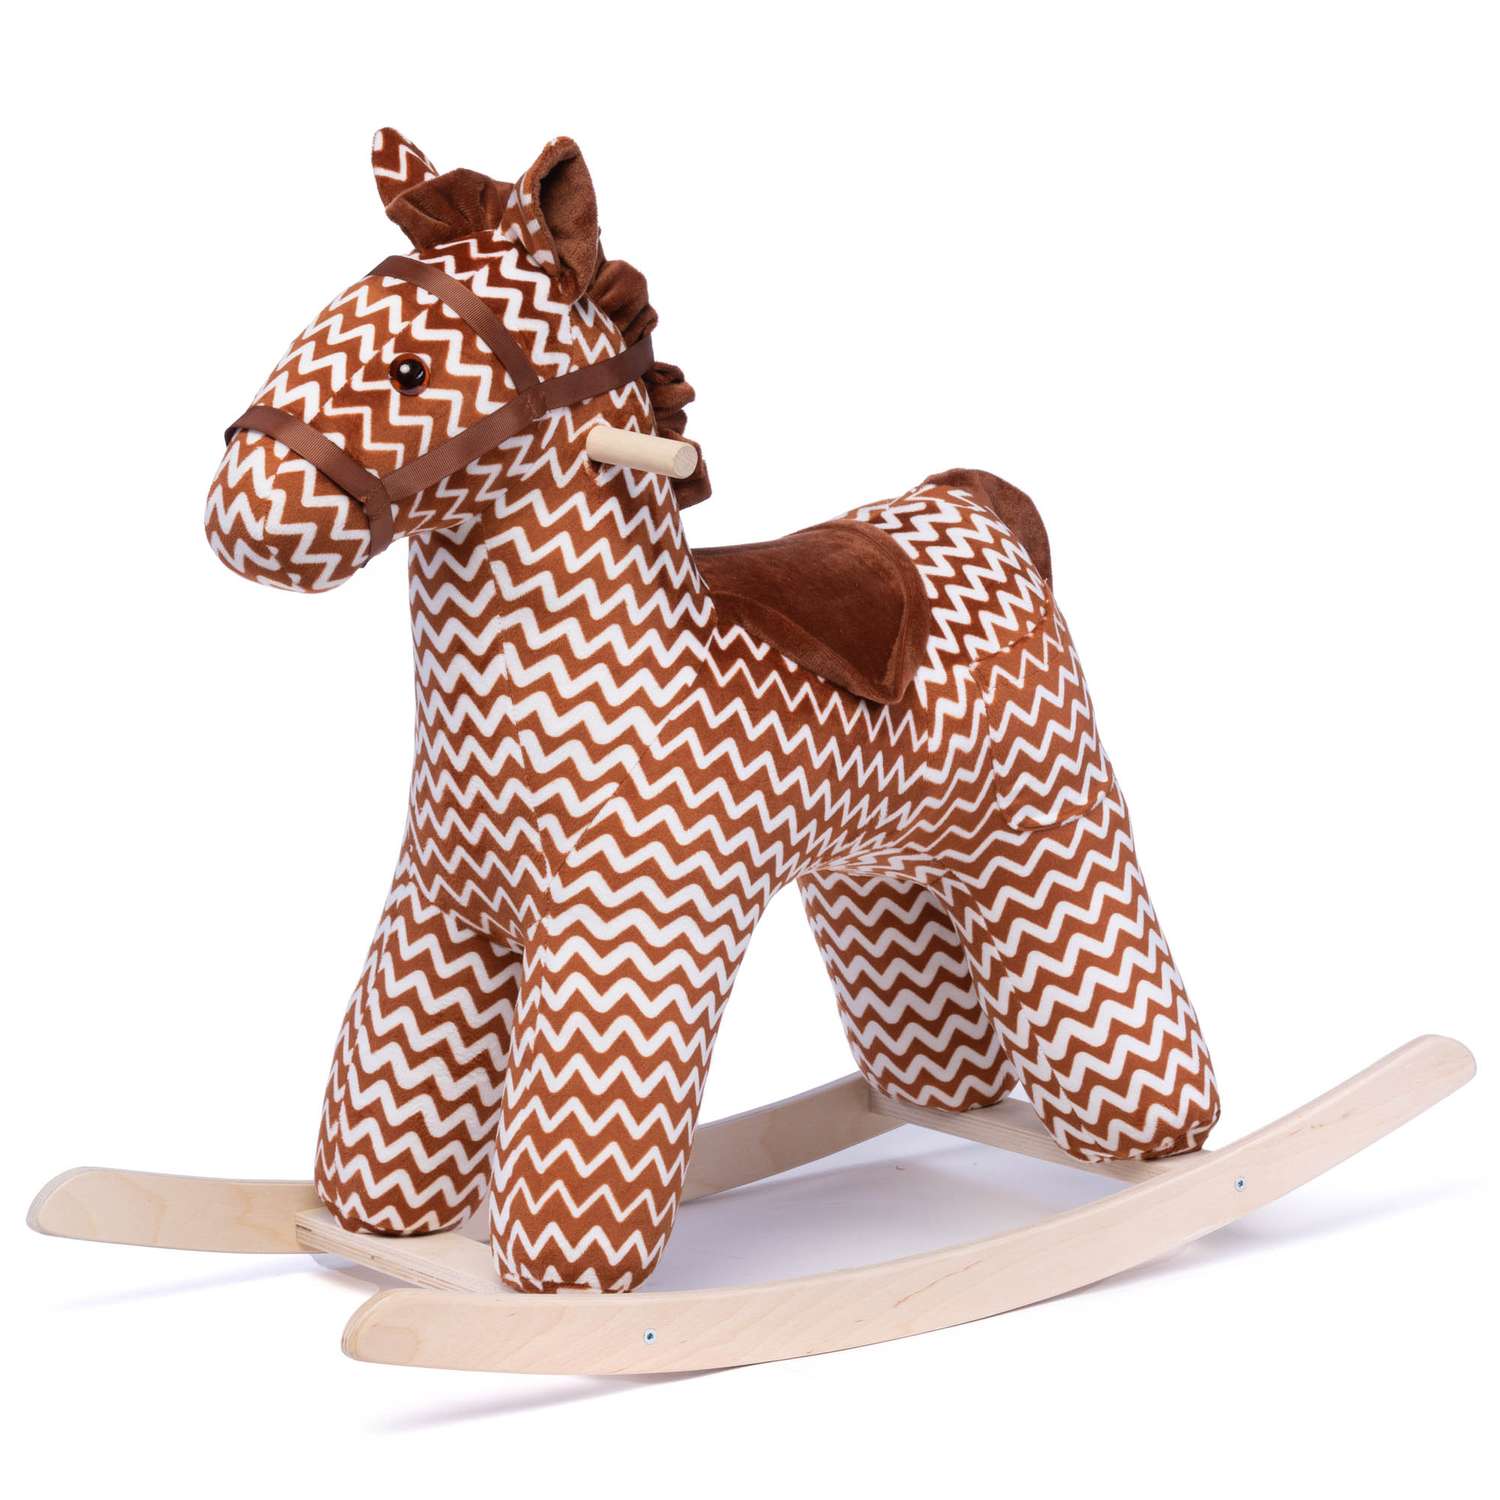 Качалка Нижегородская игрушка лошадь - фото 1